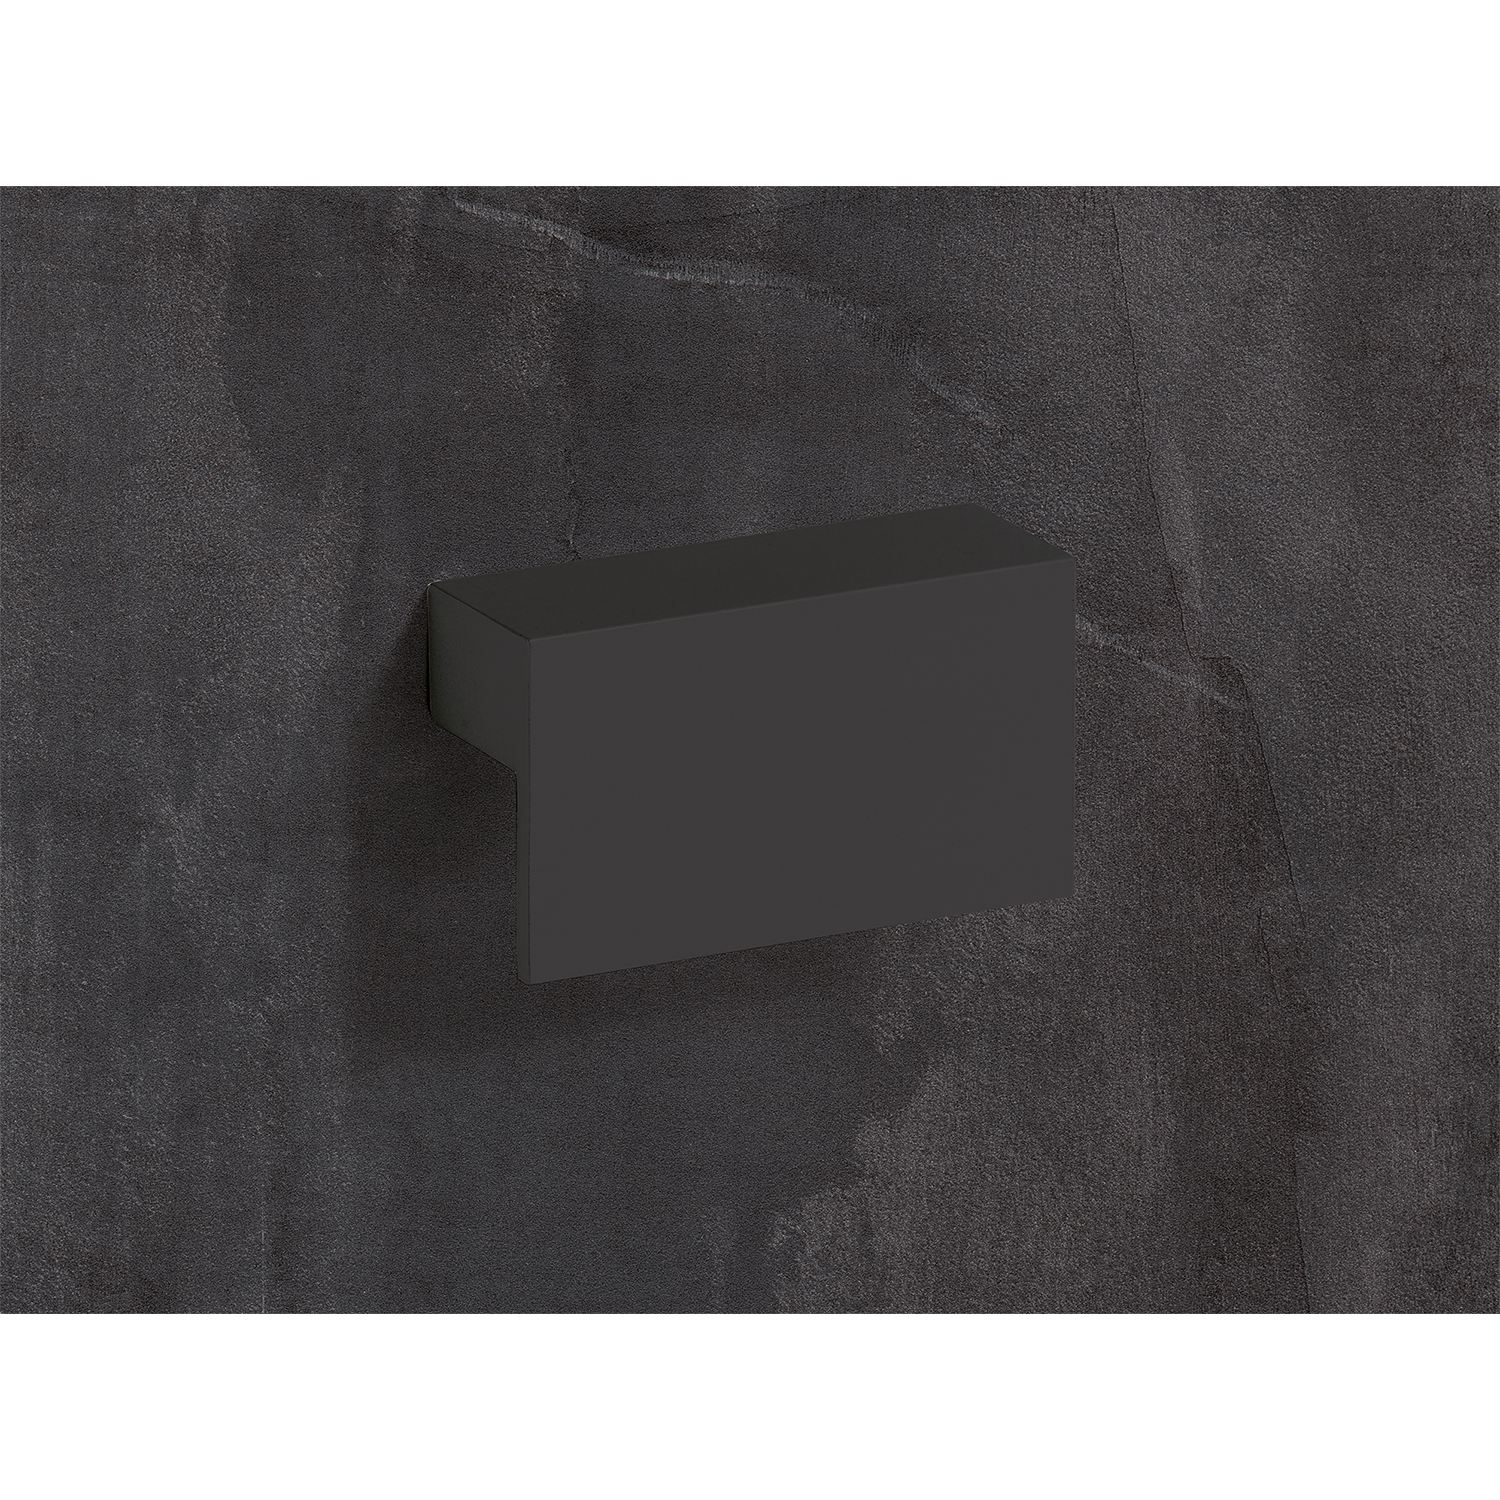 HETTICH Griff Trani, •–• 128, L 128 mm, B 26 mm, H 16 mm, Schwarz matt, 9265972